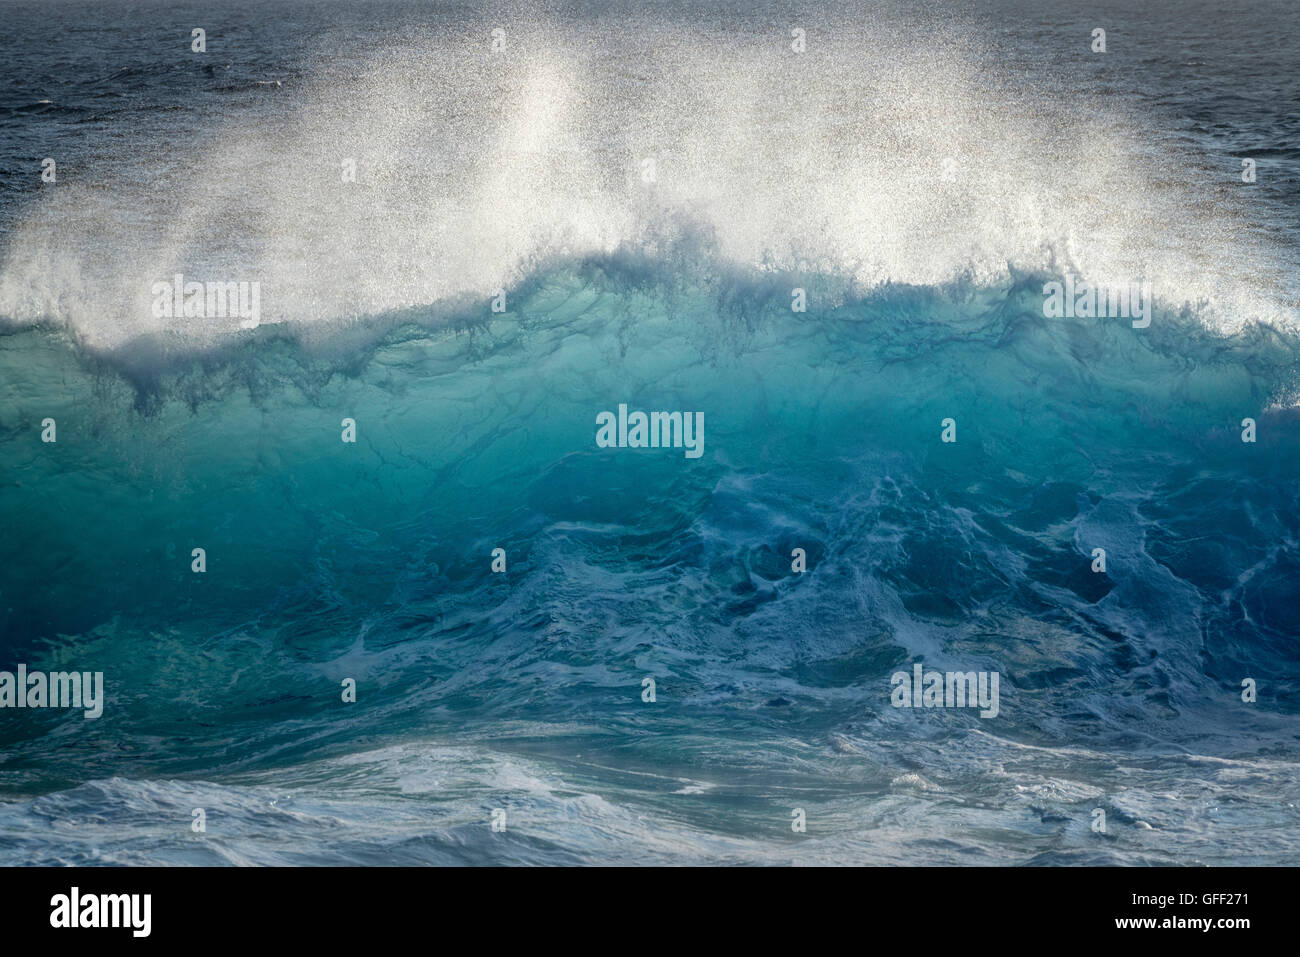 Large ocean waves. Hawaii Island. Stock Photo